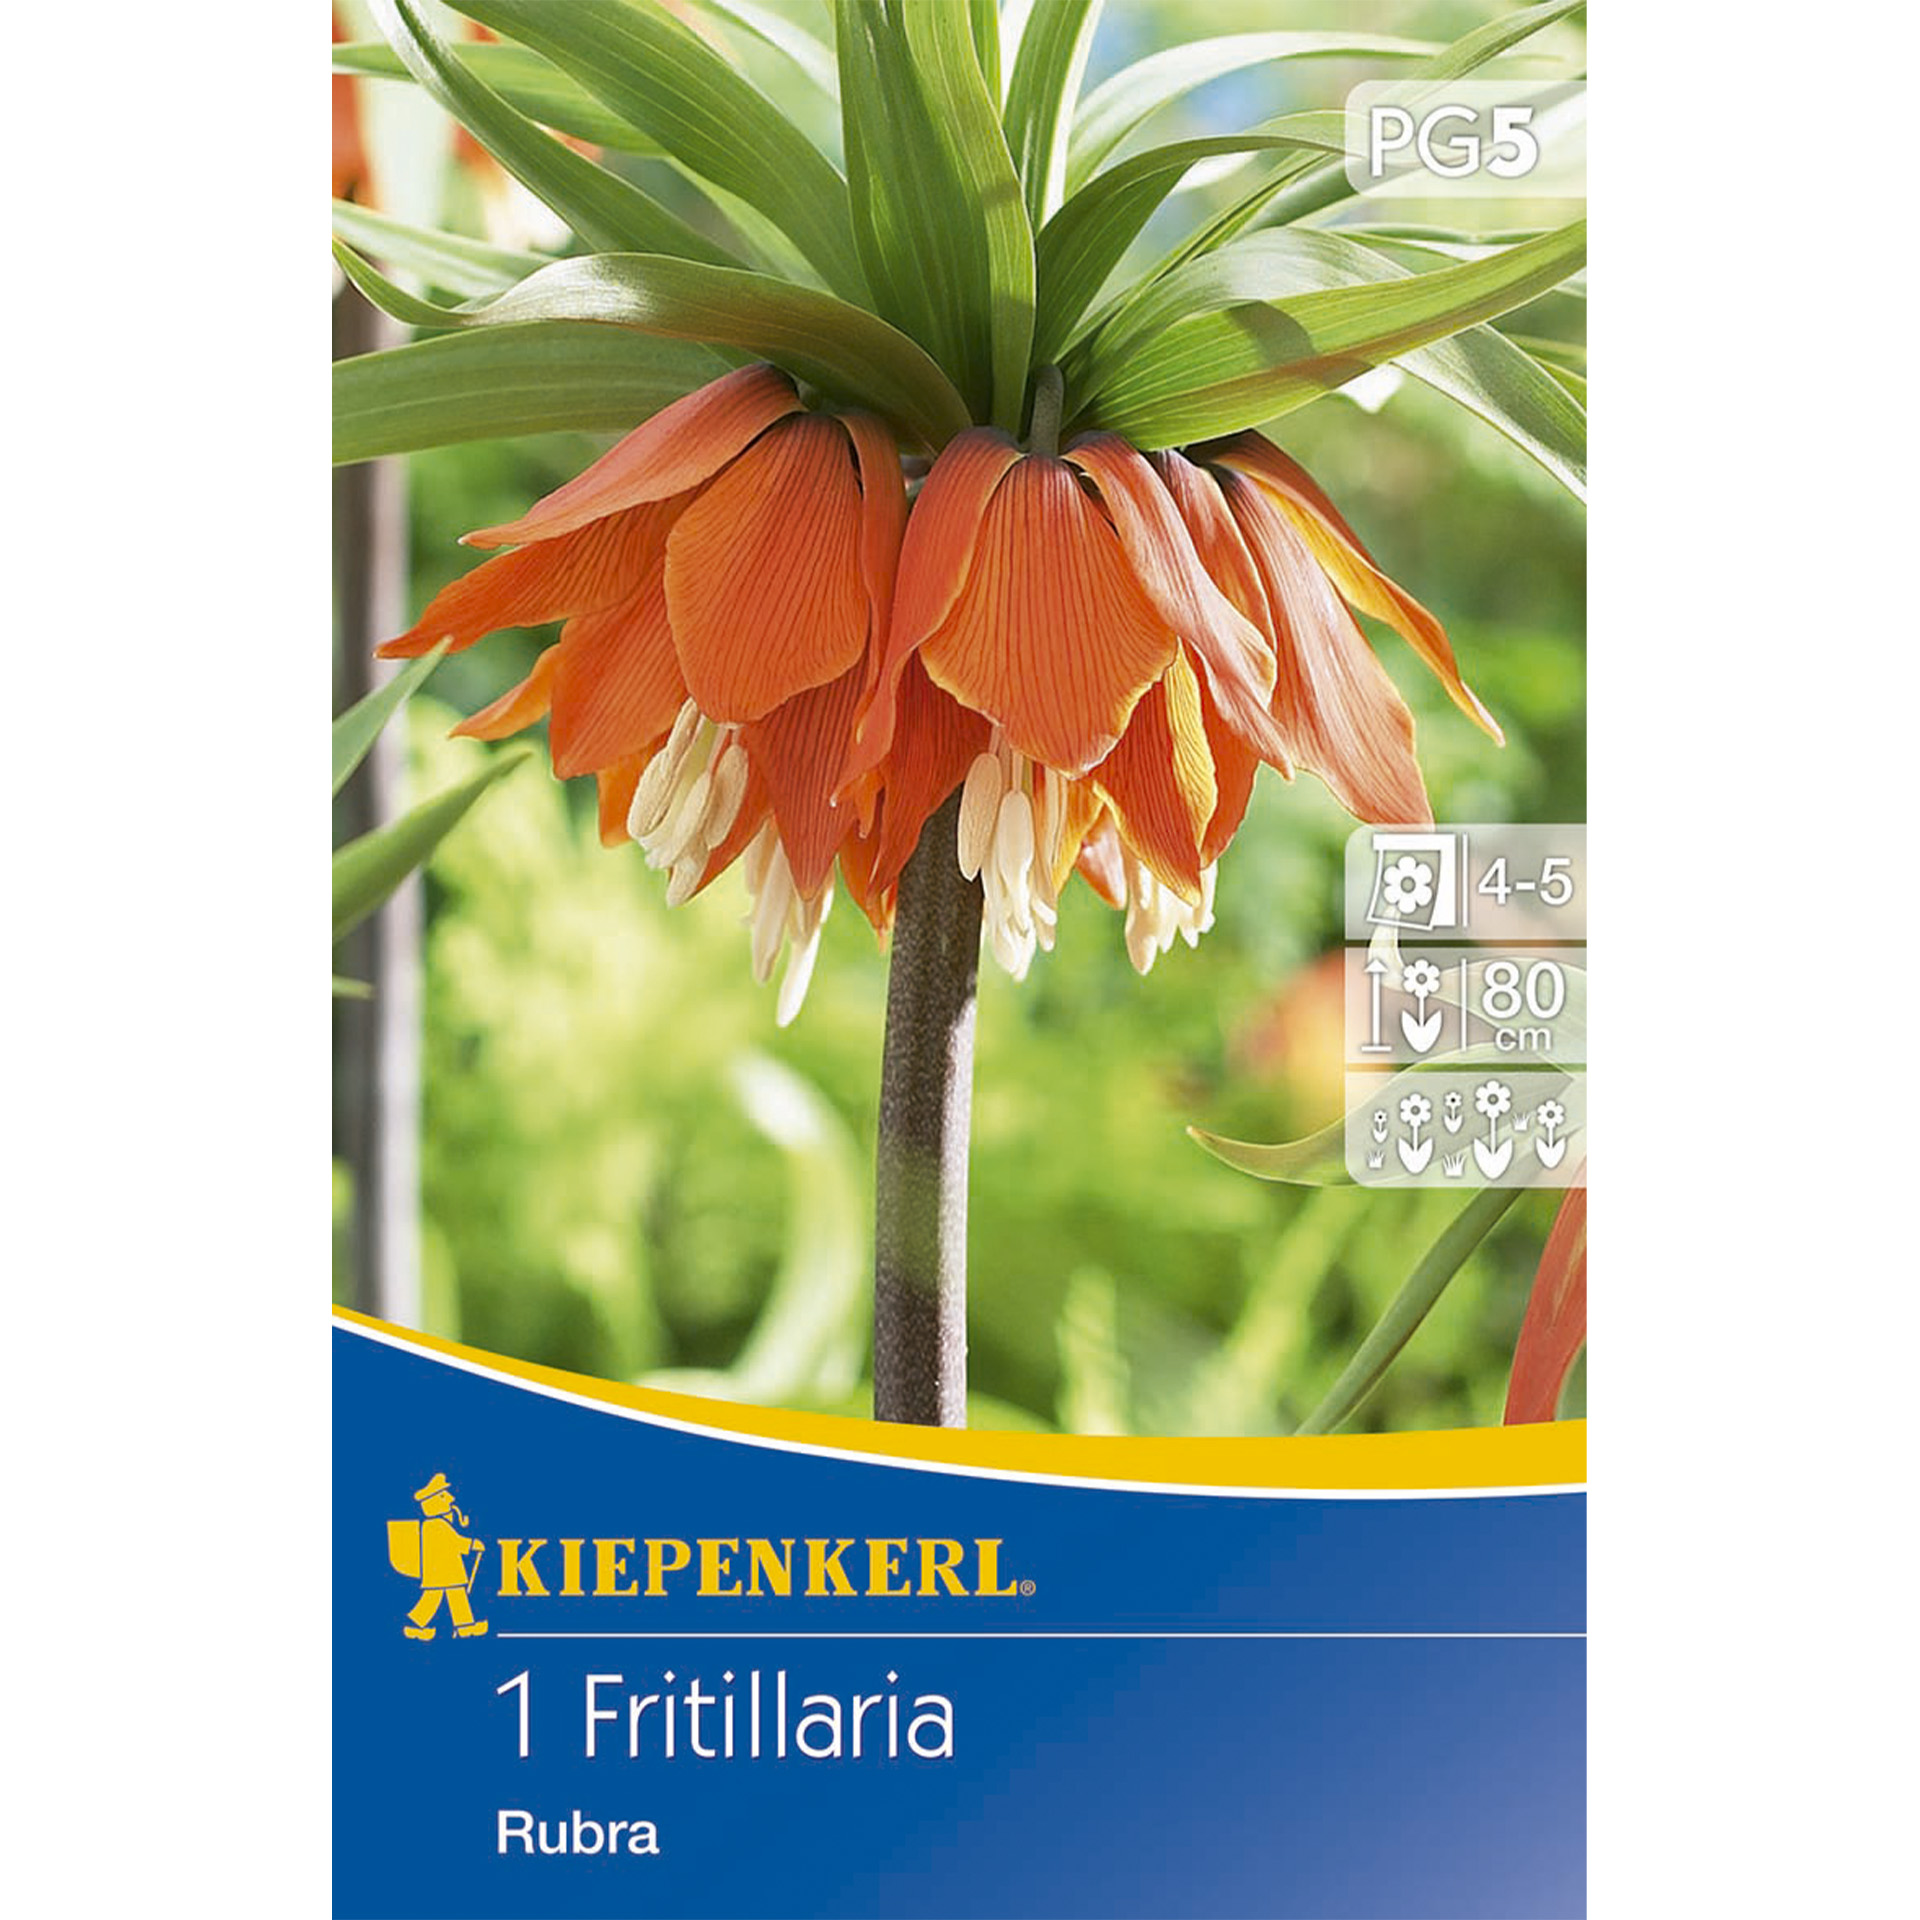 Herbstblumenzwiebel Kaiserkrone Rubra, auch Fritillaria genannt als Frühjahrsblüher